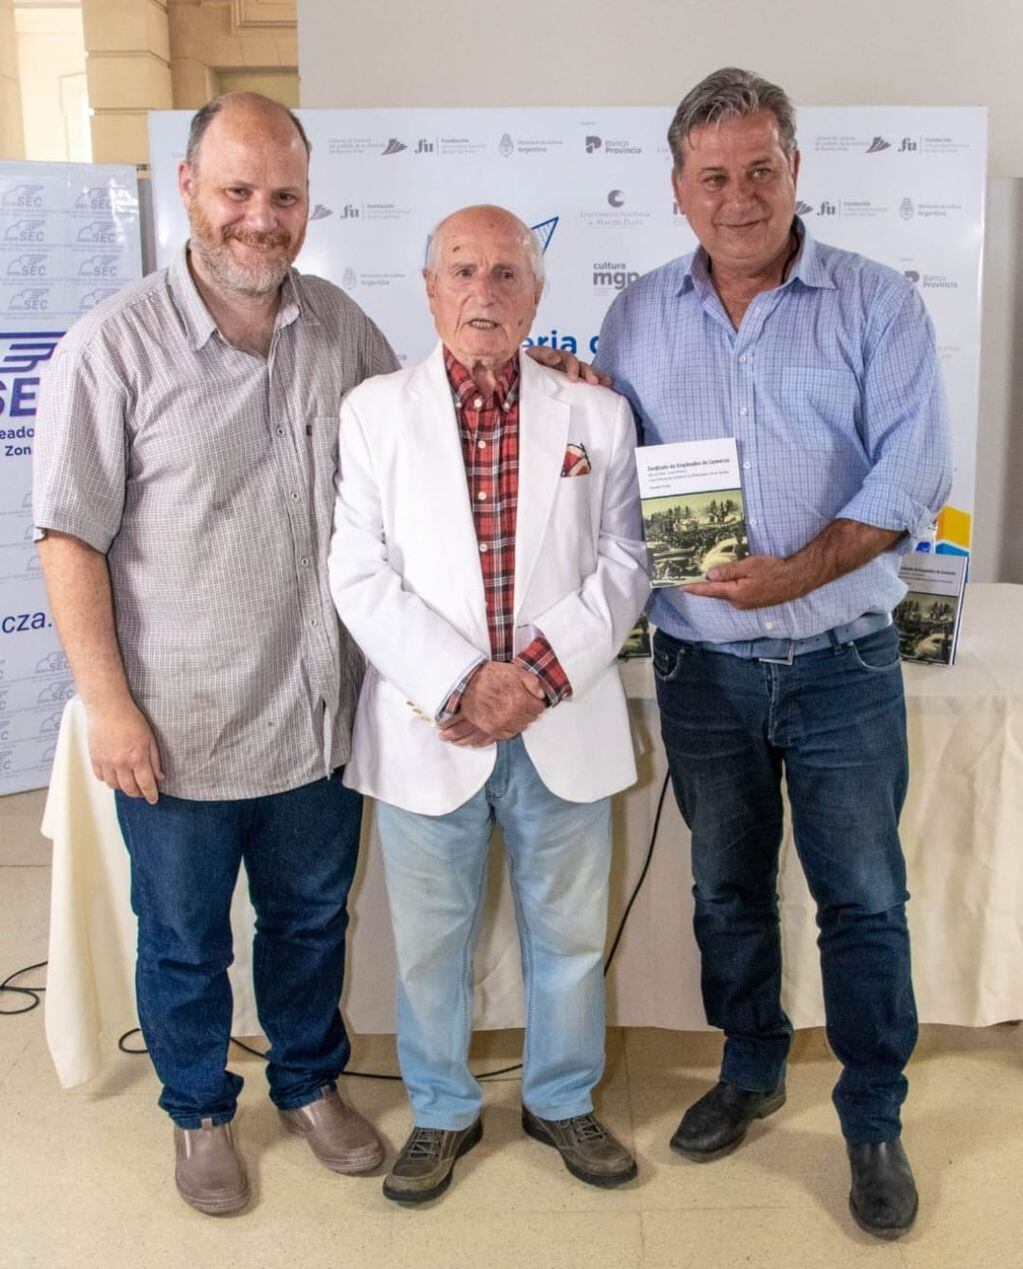 El libro cuenta la historia del Sindicato de Empleados de Comercio de Mar del Plata y Zona Atlántica, relatada por dirigentes mercantiles y el trabajo de la UNMdP.